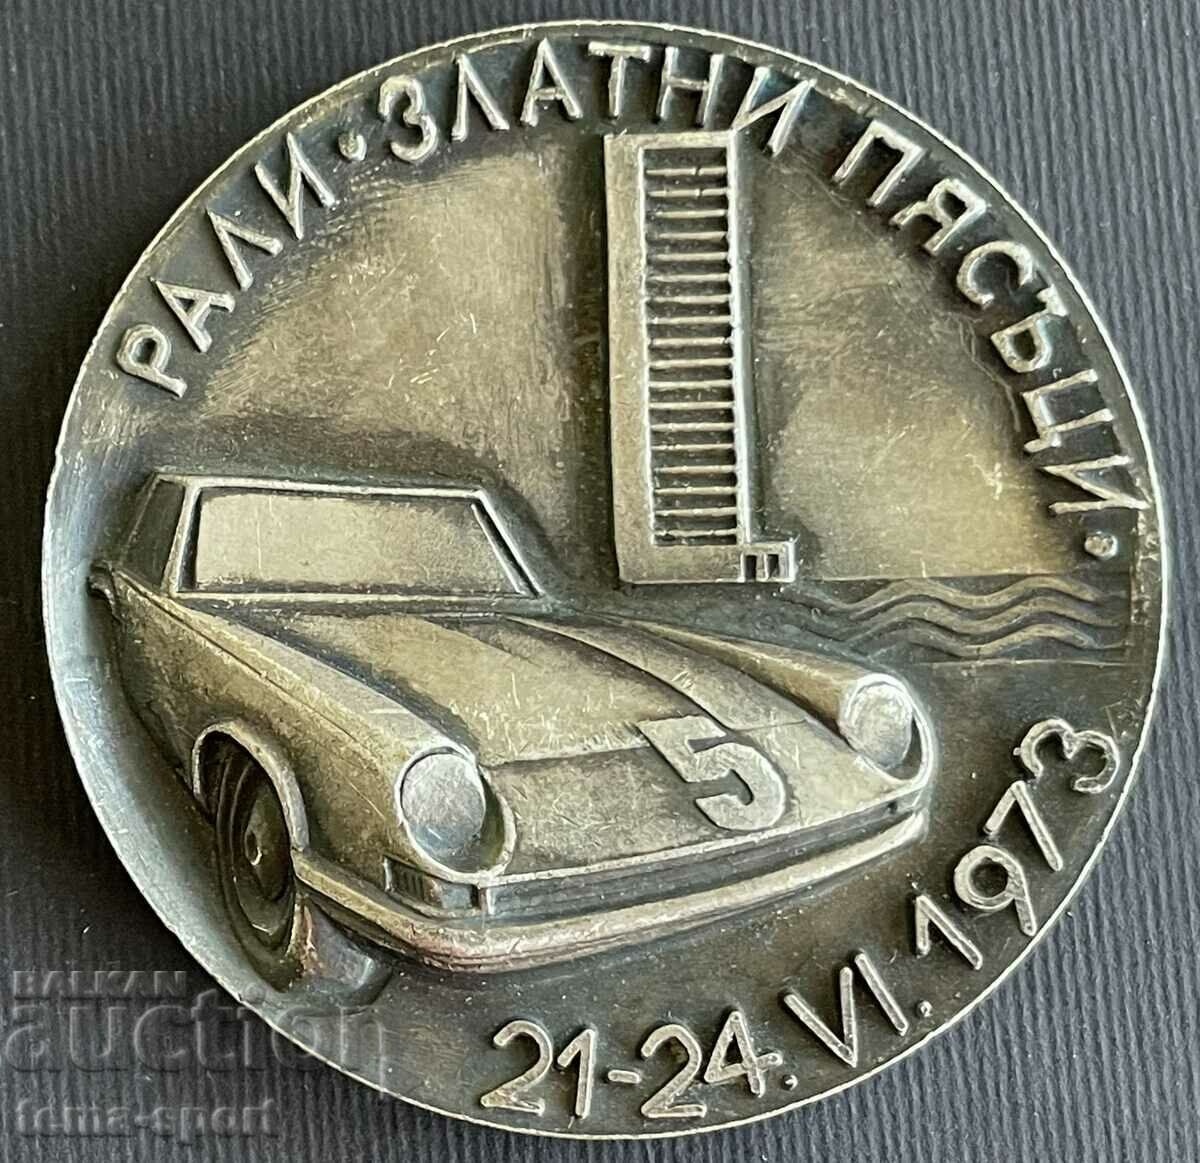 36 Bulgaria plaque Golden Sands Rally 1973.